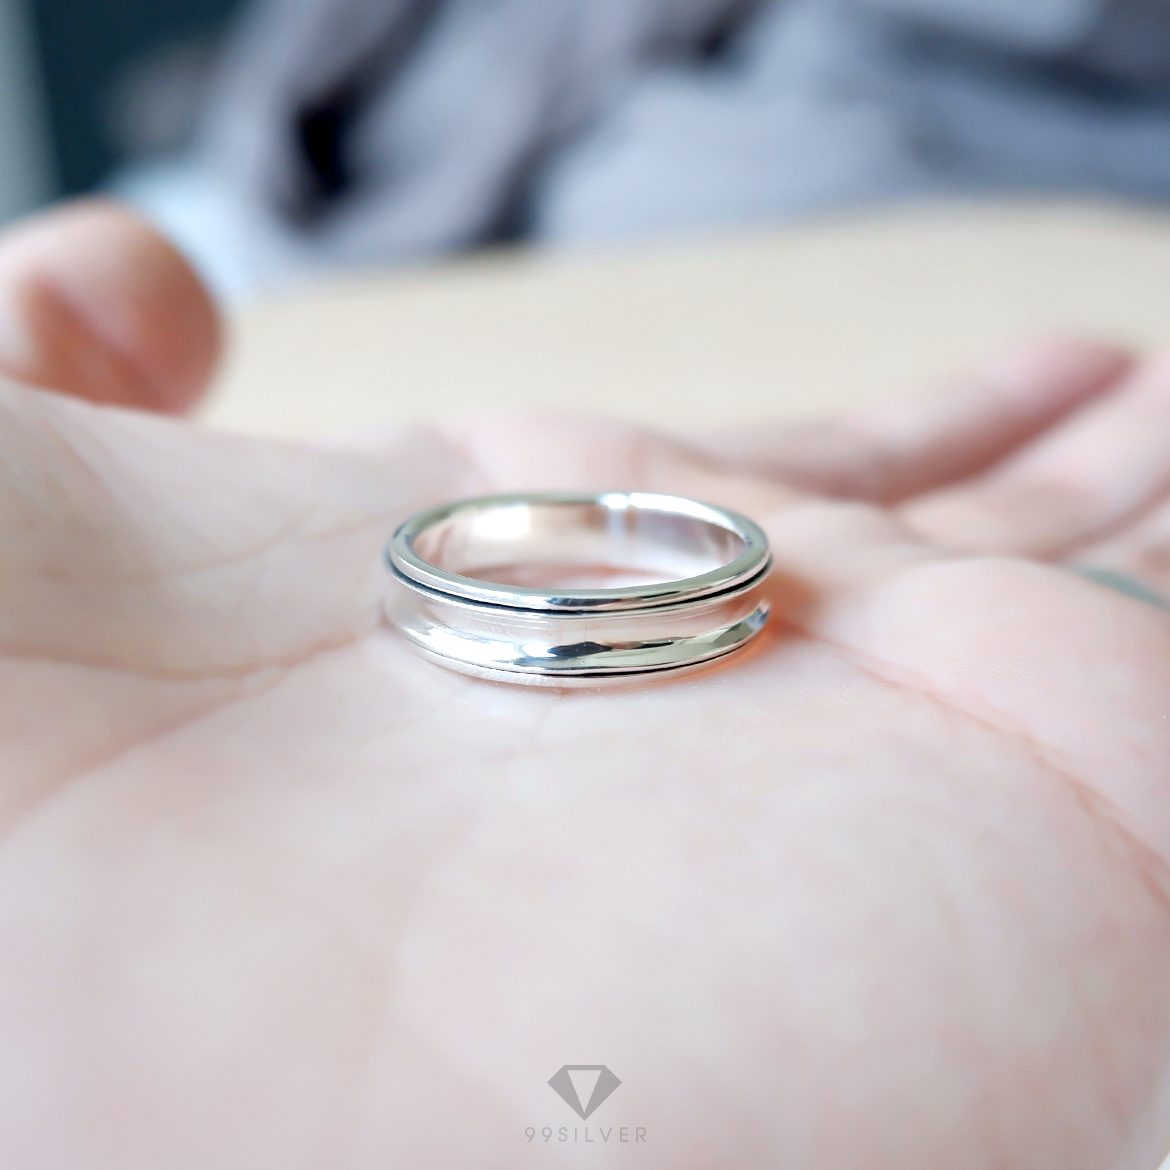 แหวนเงินหมุนได้ เทรงนี้เรียกว่าแหวนอานม้า ตัวเรือนแยกสองชิ้นหมุนได้อิสระ